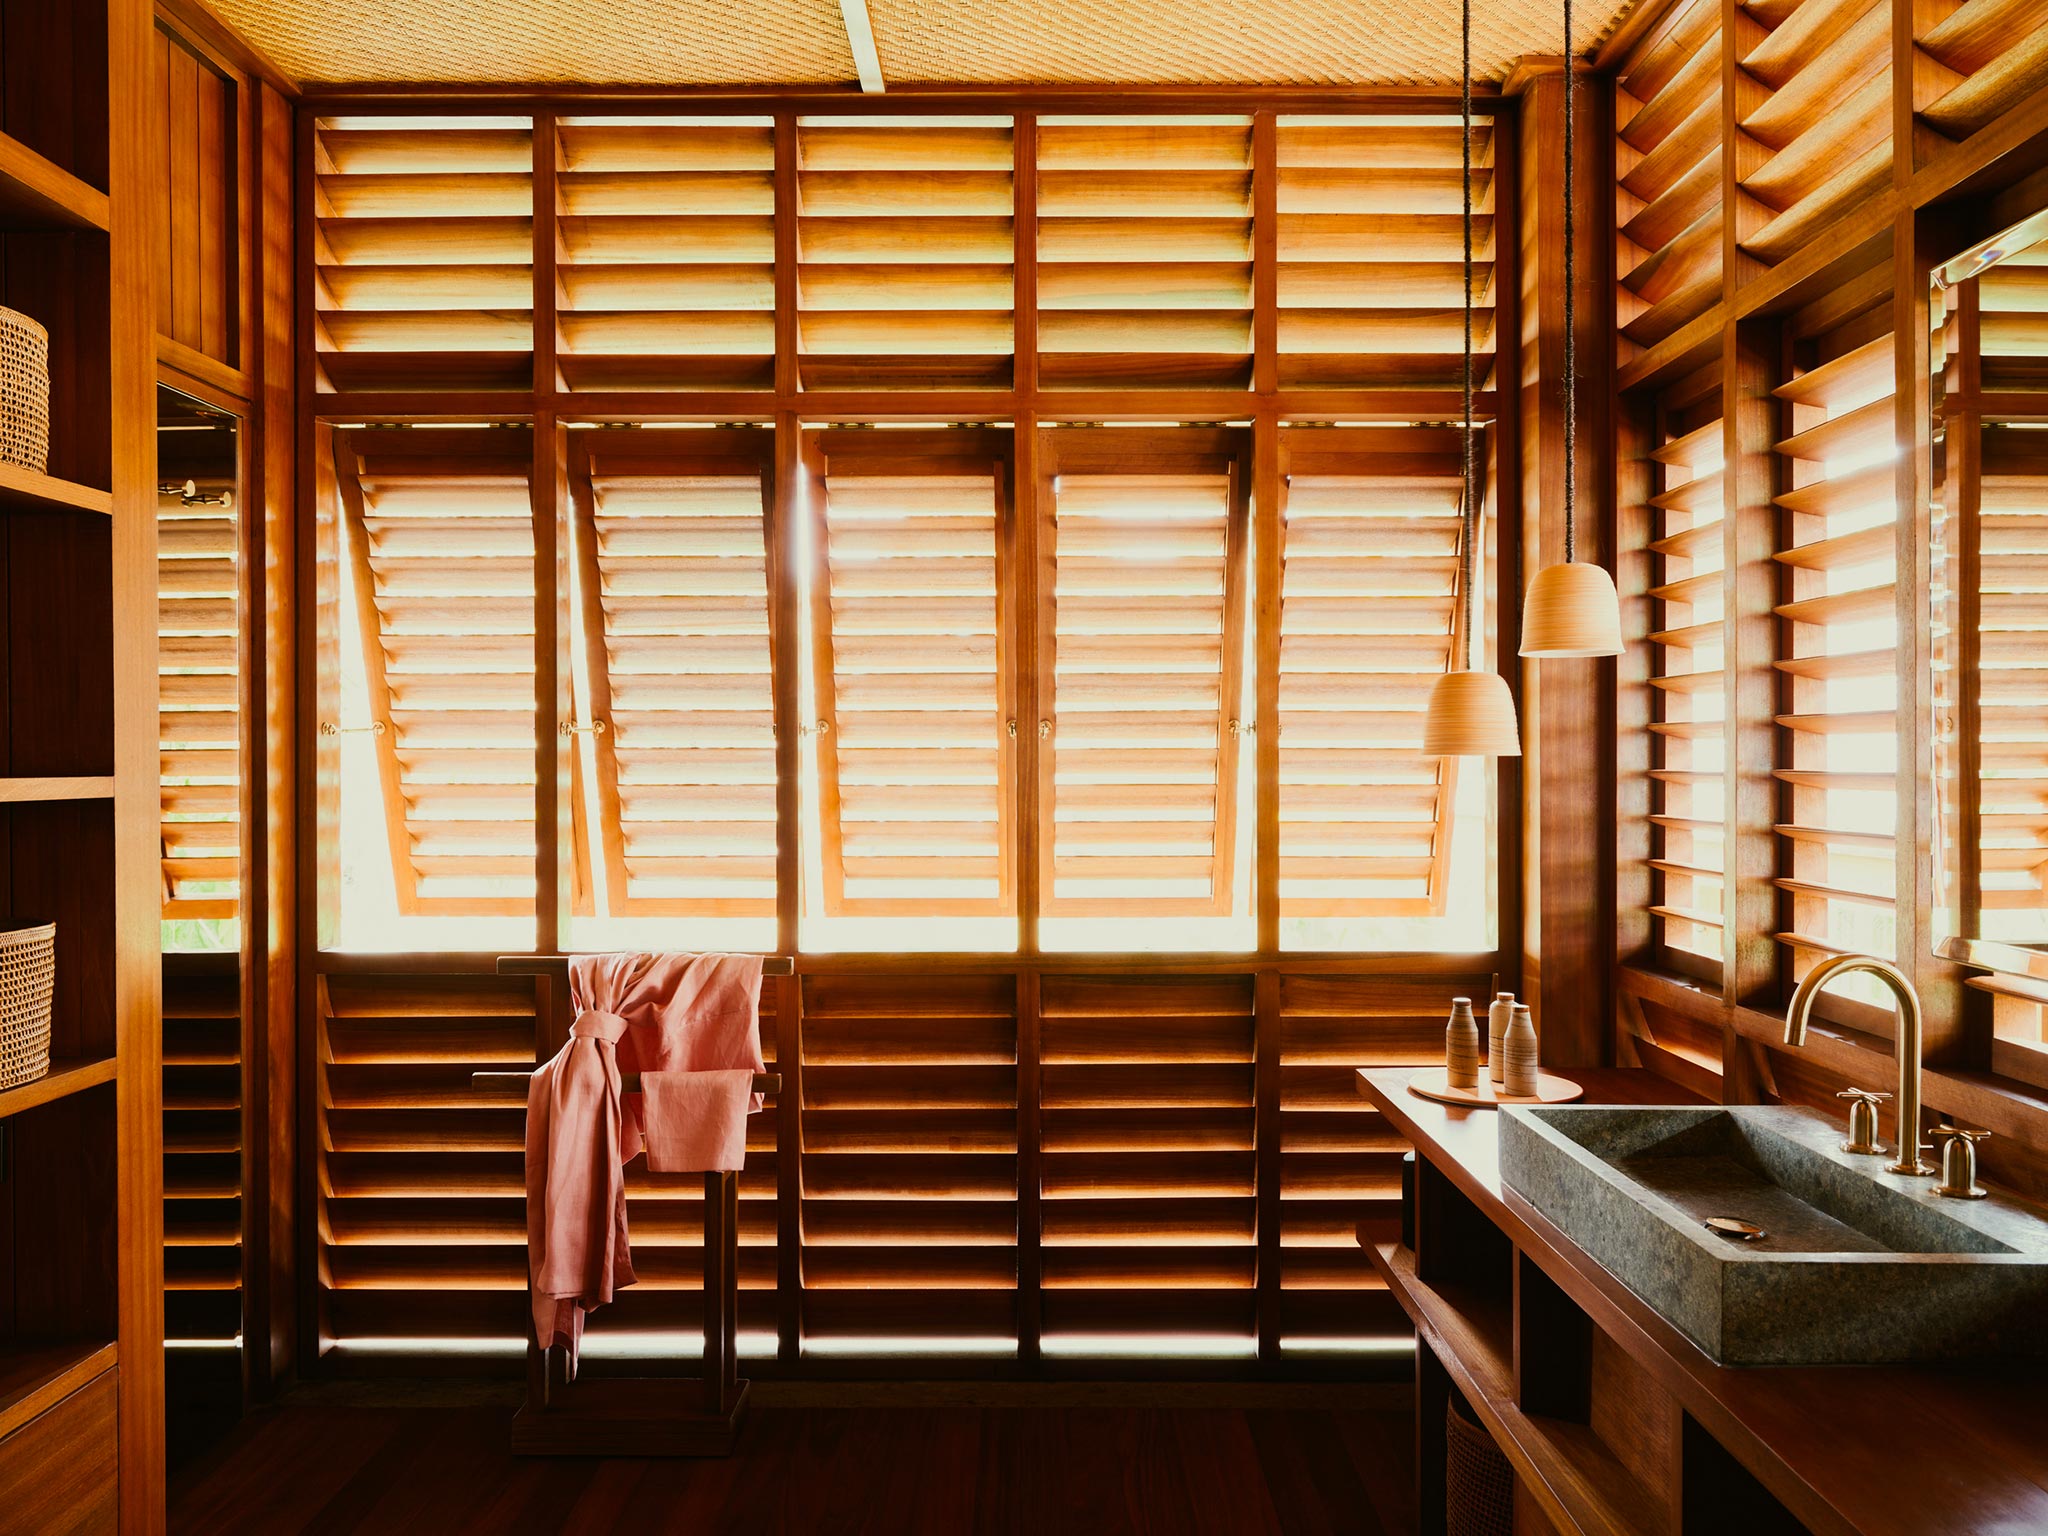 La salle de bain chaleureuse des suites, Lost Lindenberg, Bali, Indonésie © Robert Rieger / Lost Lindenberg